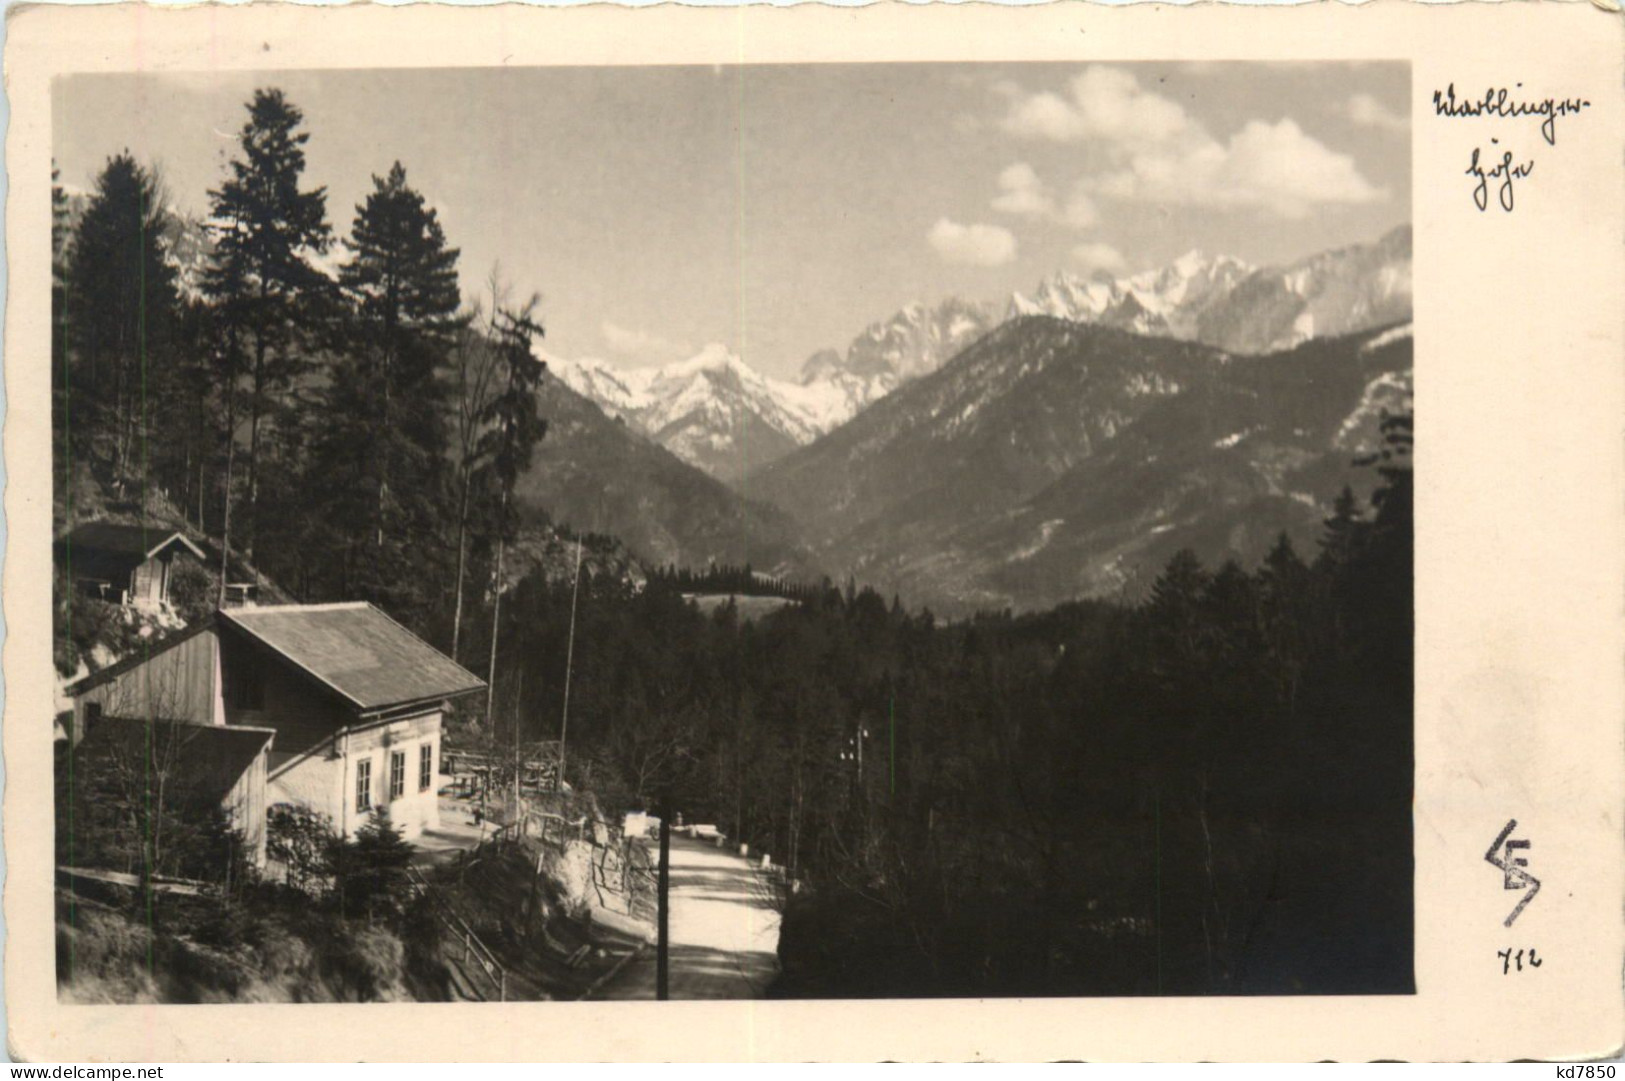 Alpengasthaus Marblingerhöhe - Kufstein